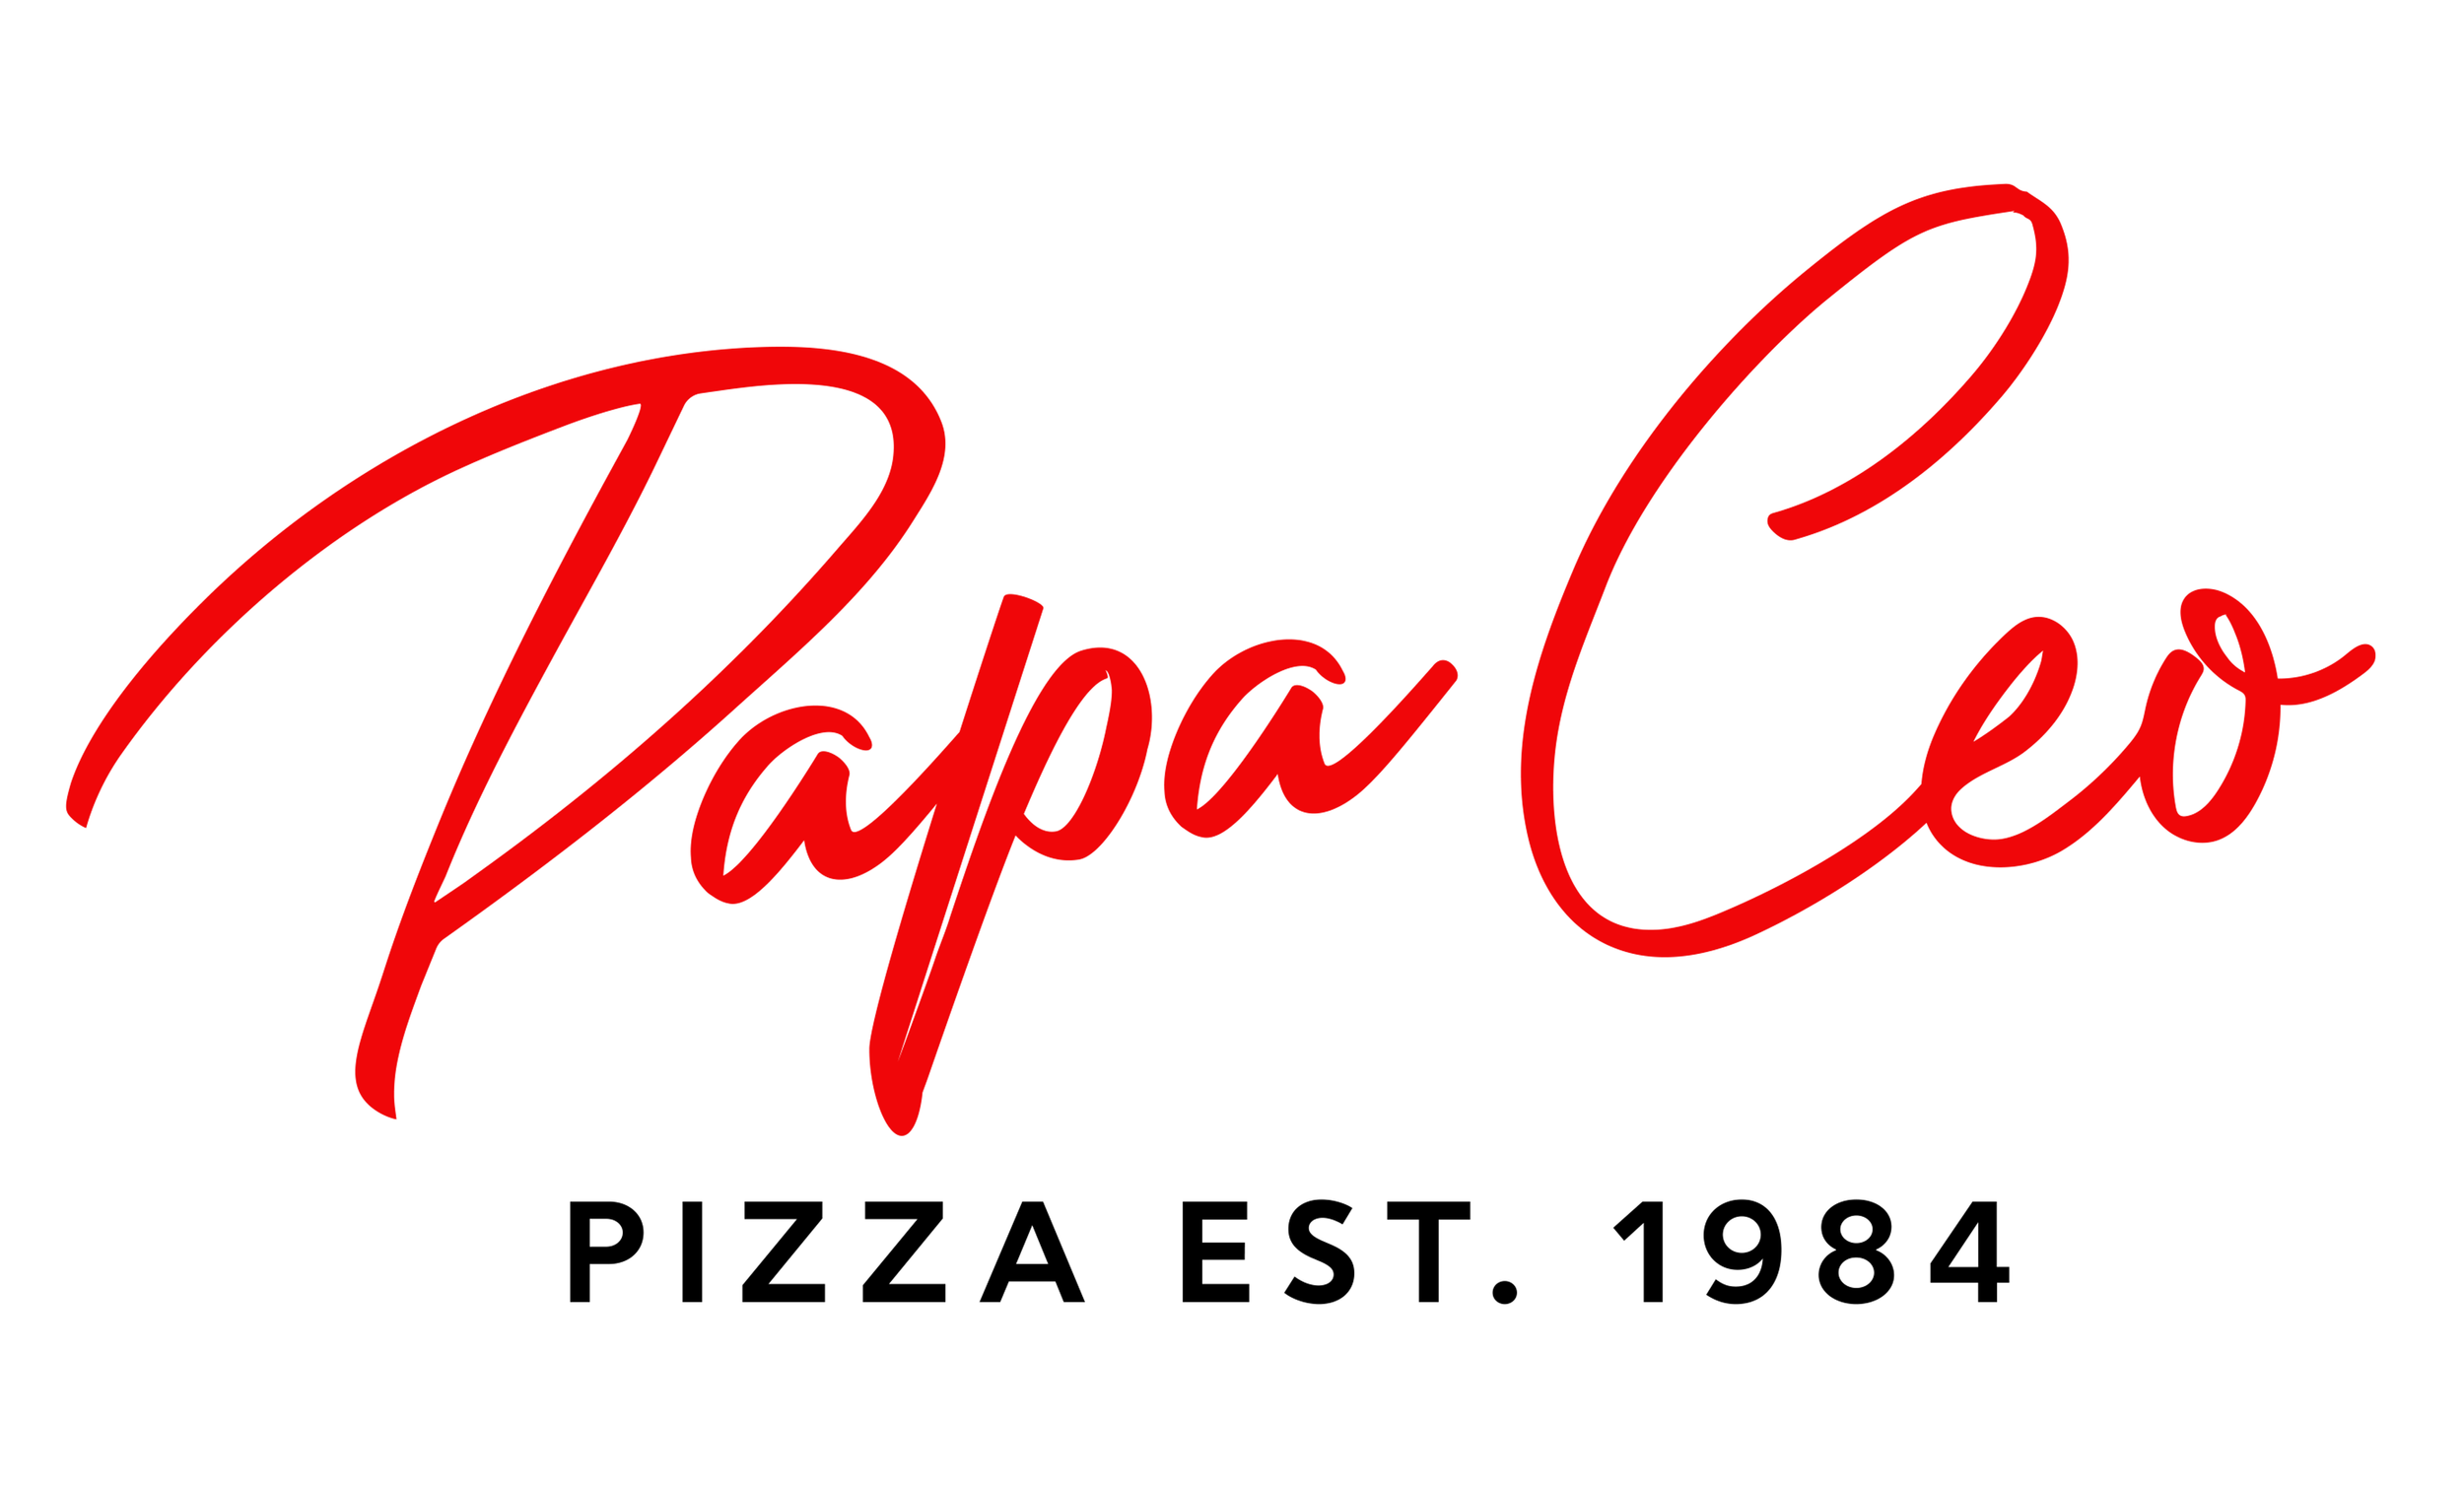 Papa Ceo Pizza